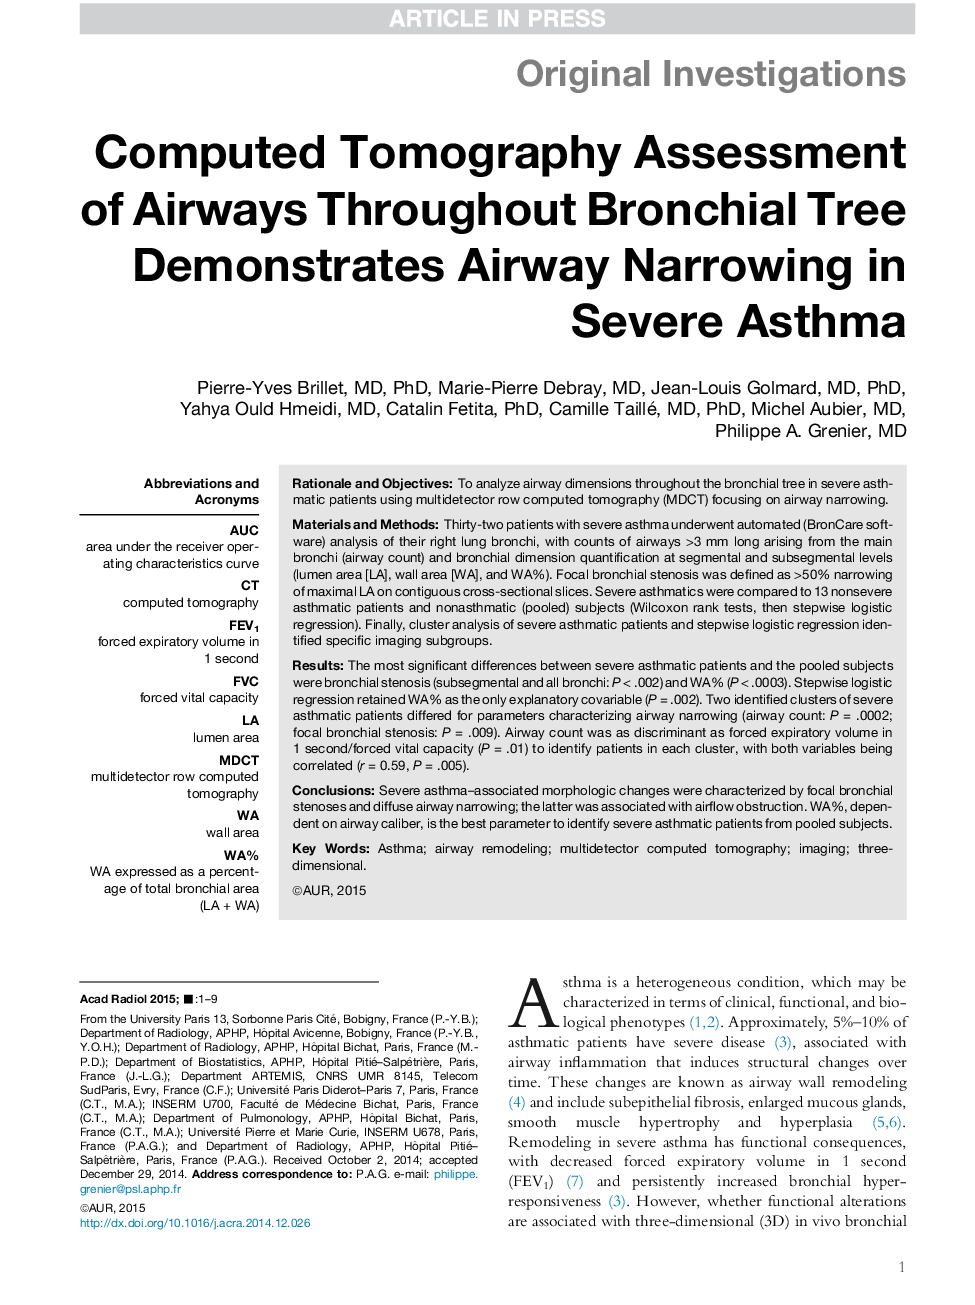 ارزیابی توموگرافی کامپیوتری هواپیما در طول درخت برونش نشان می دهد که راه هوایی محدود کردن در آسم شدید 